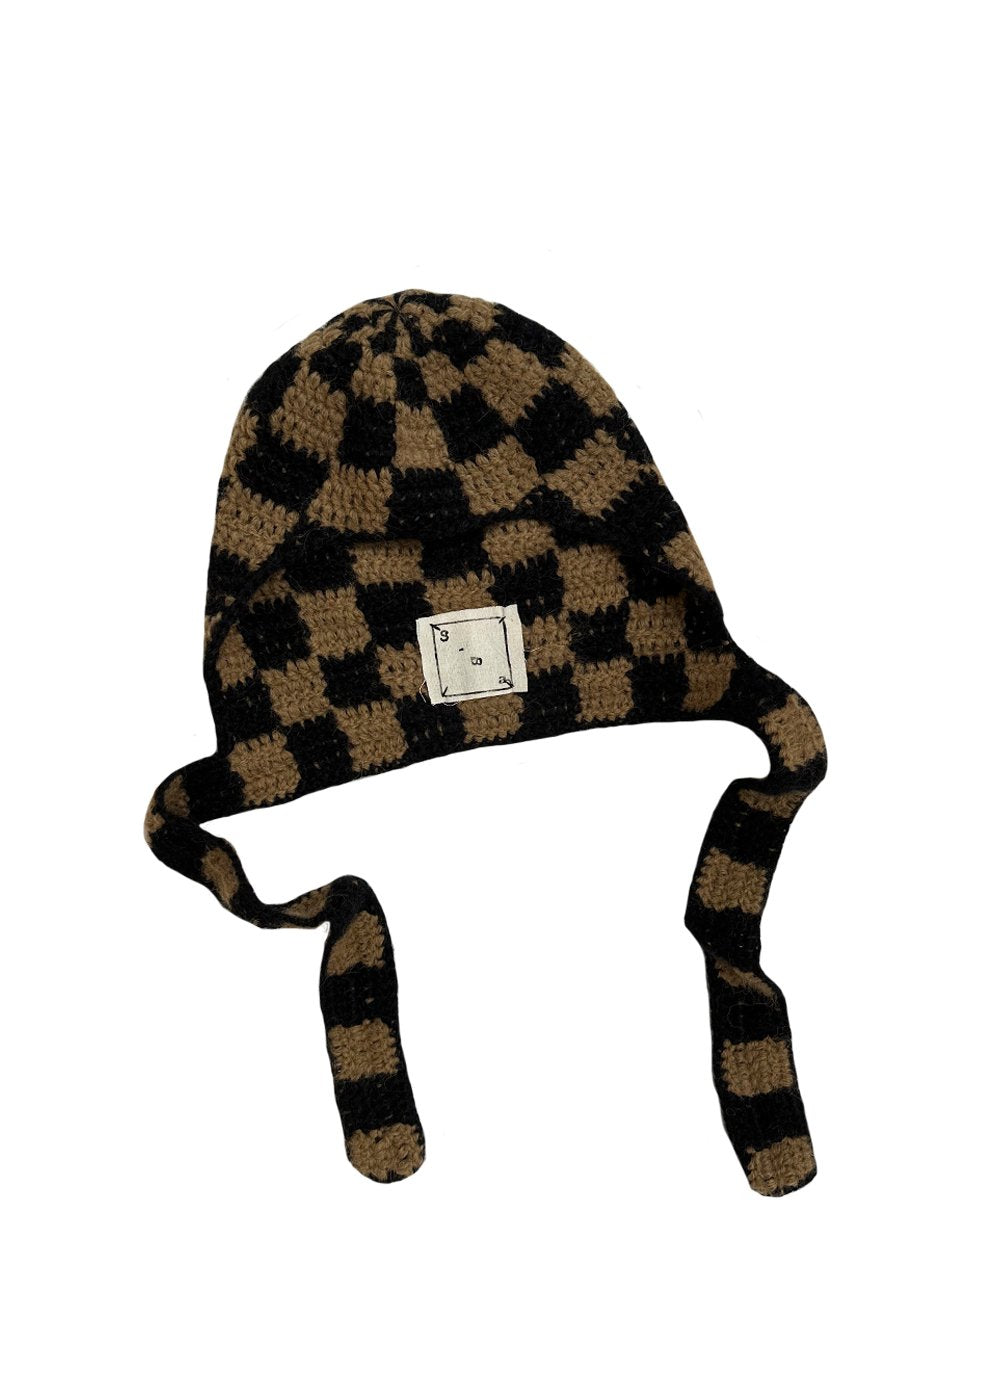 Crochet Hood (brown/black)